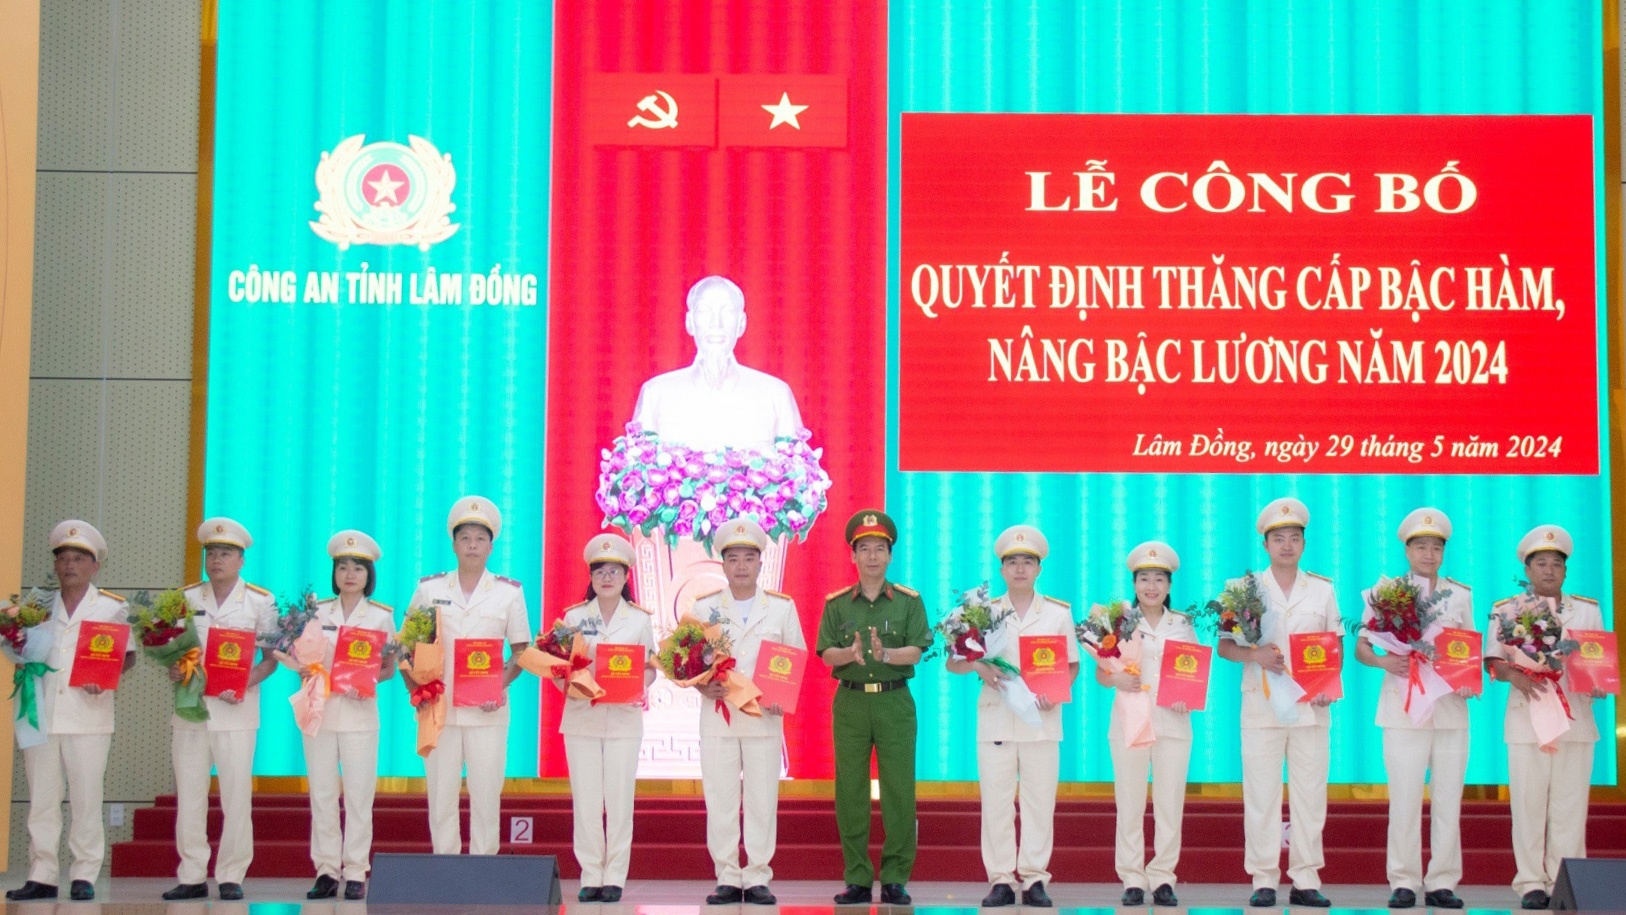 Đại tá Đinh Xuân Huy - Phó Giám đốc Công an tỉnh trao Quyết định thăng cấp bậc hàm của Giám đốc Công an tỉnh cho các cán bộ, chiến sỹ